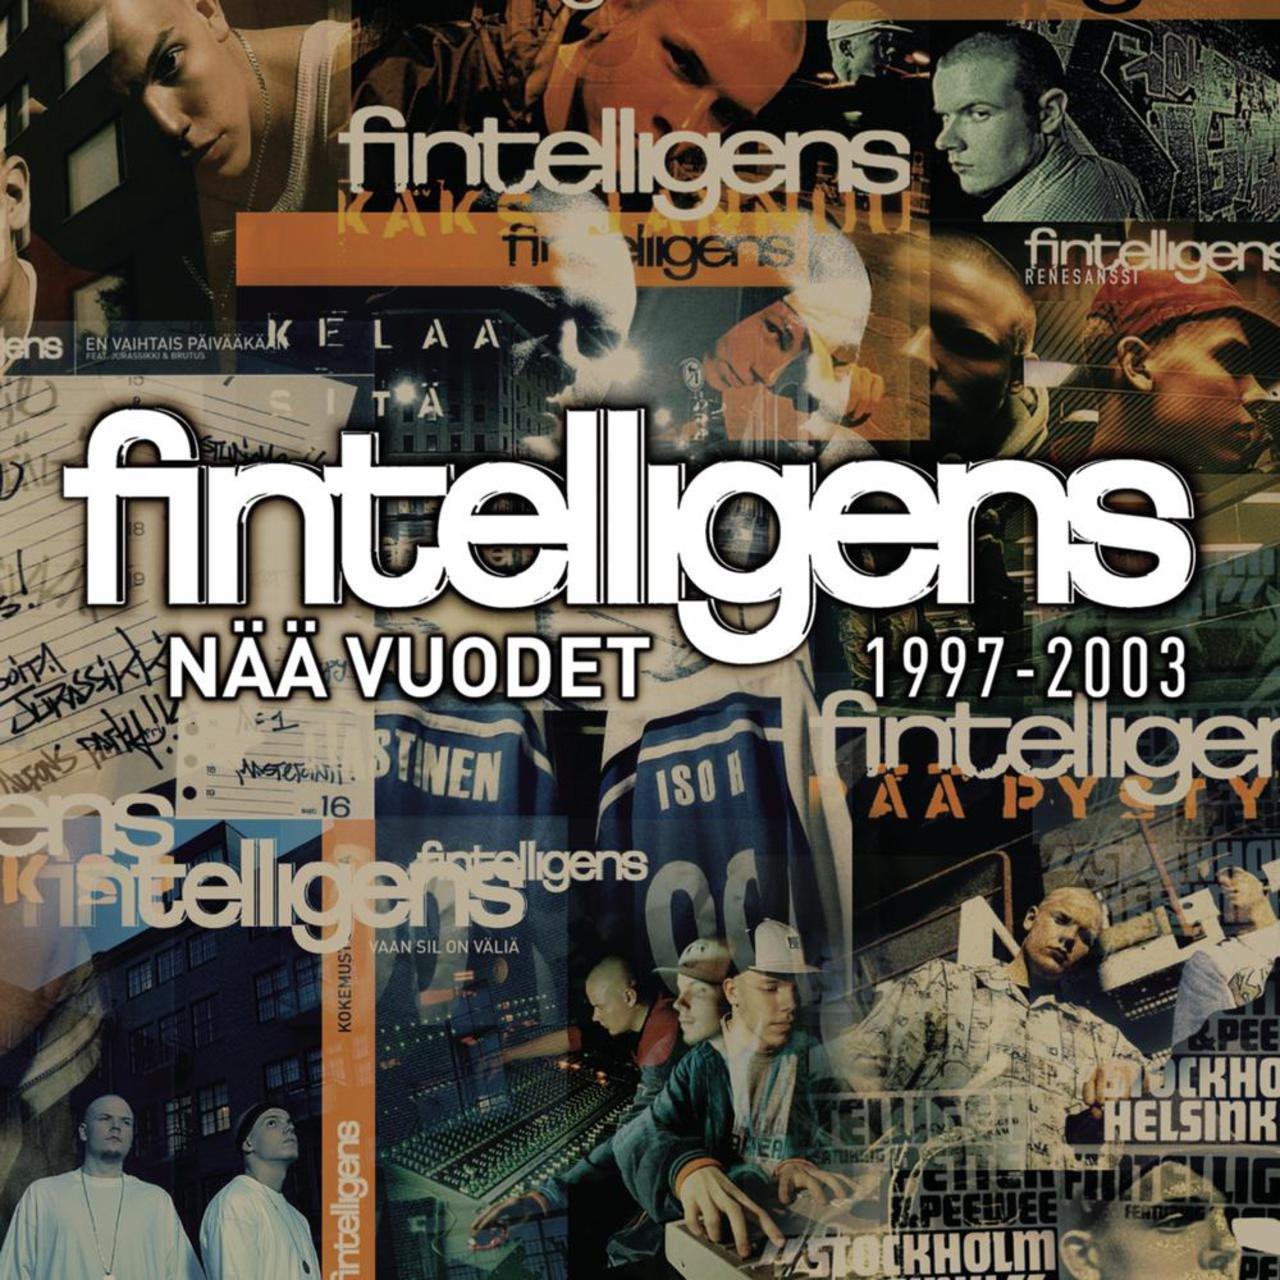 Fintelligens – Vaan Sil On Väliä (feat. Illi)